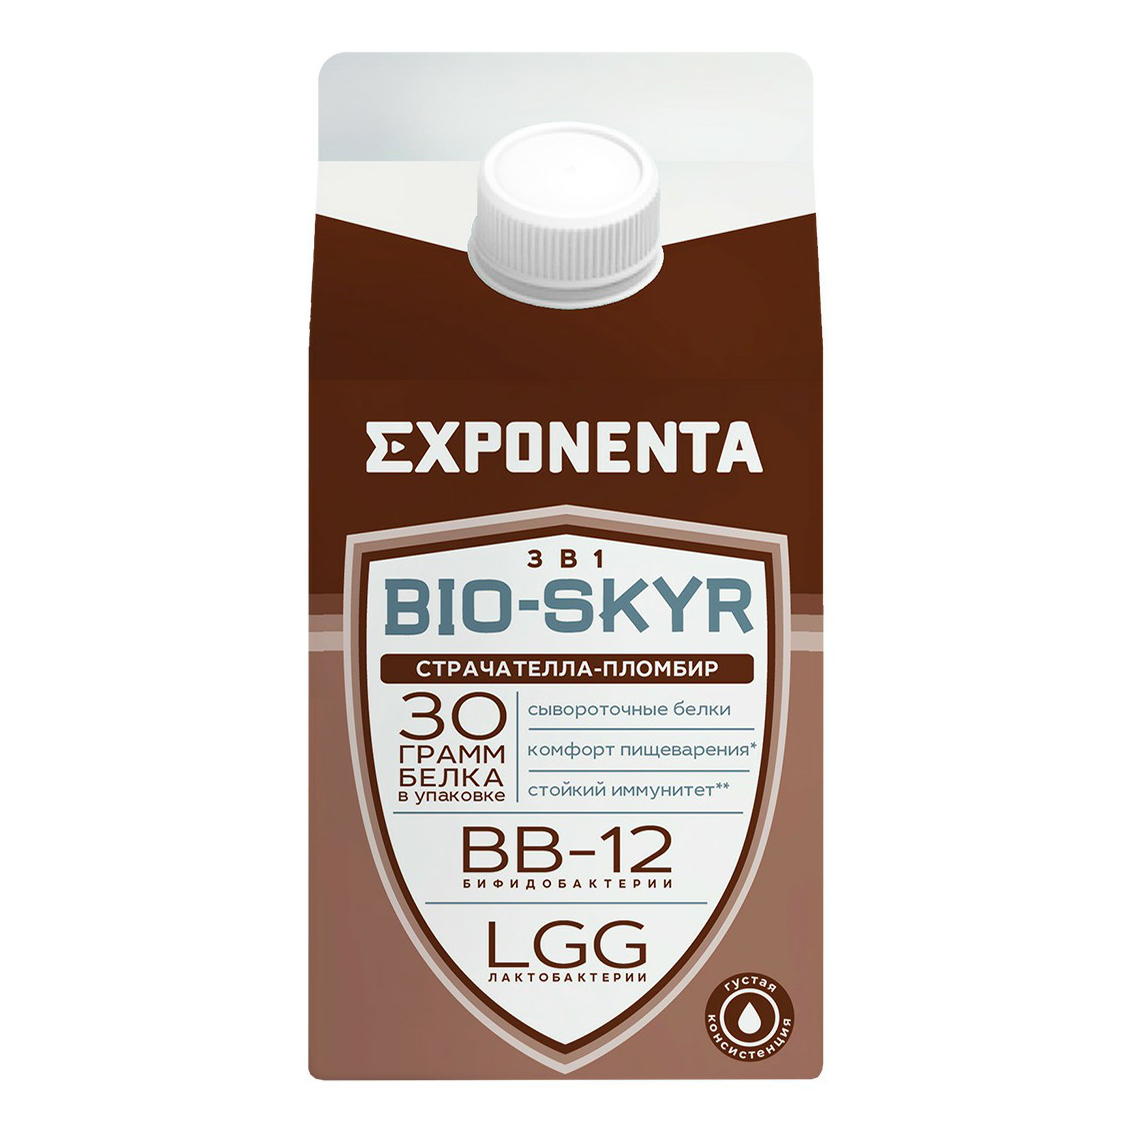 Кисломолочный напиток Exponenta Bio-Skyr страчателла-пломбир обезжиренный 500 мл